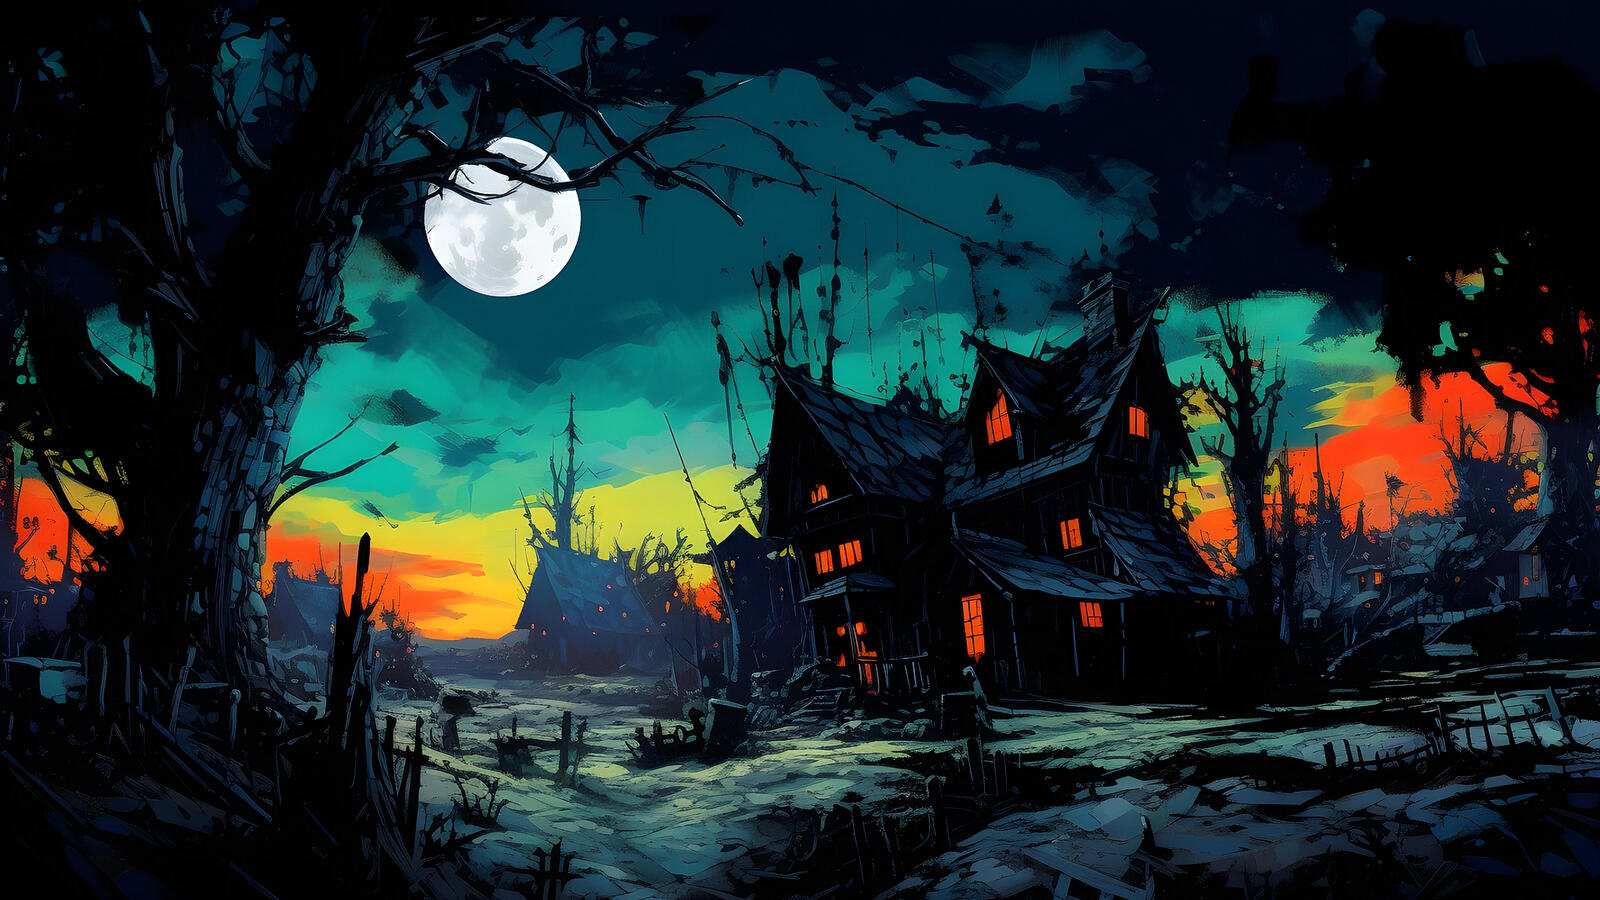 Бесплатное фото Старый страшный дом на фоне ночного неба с луной